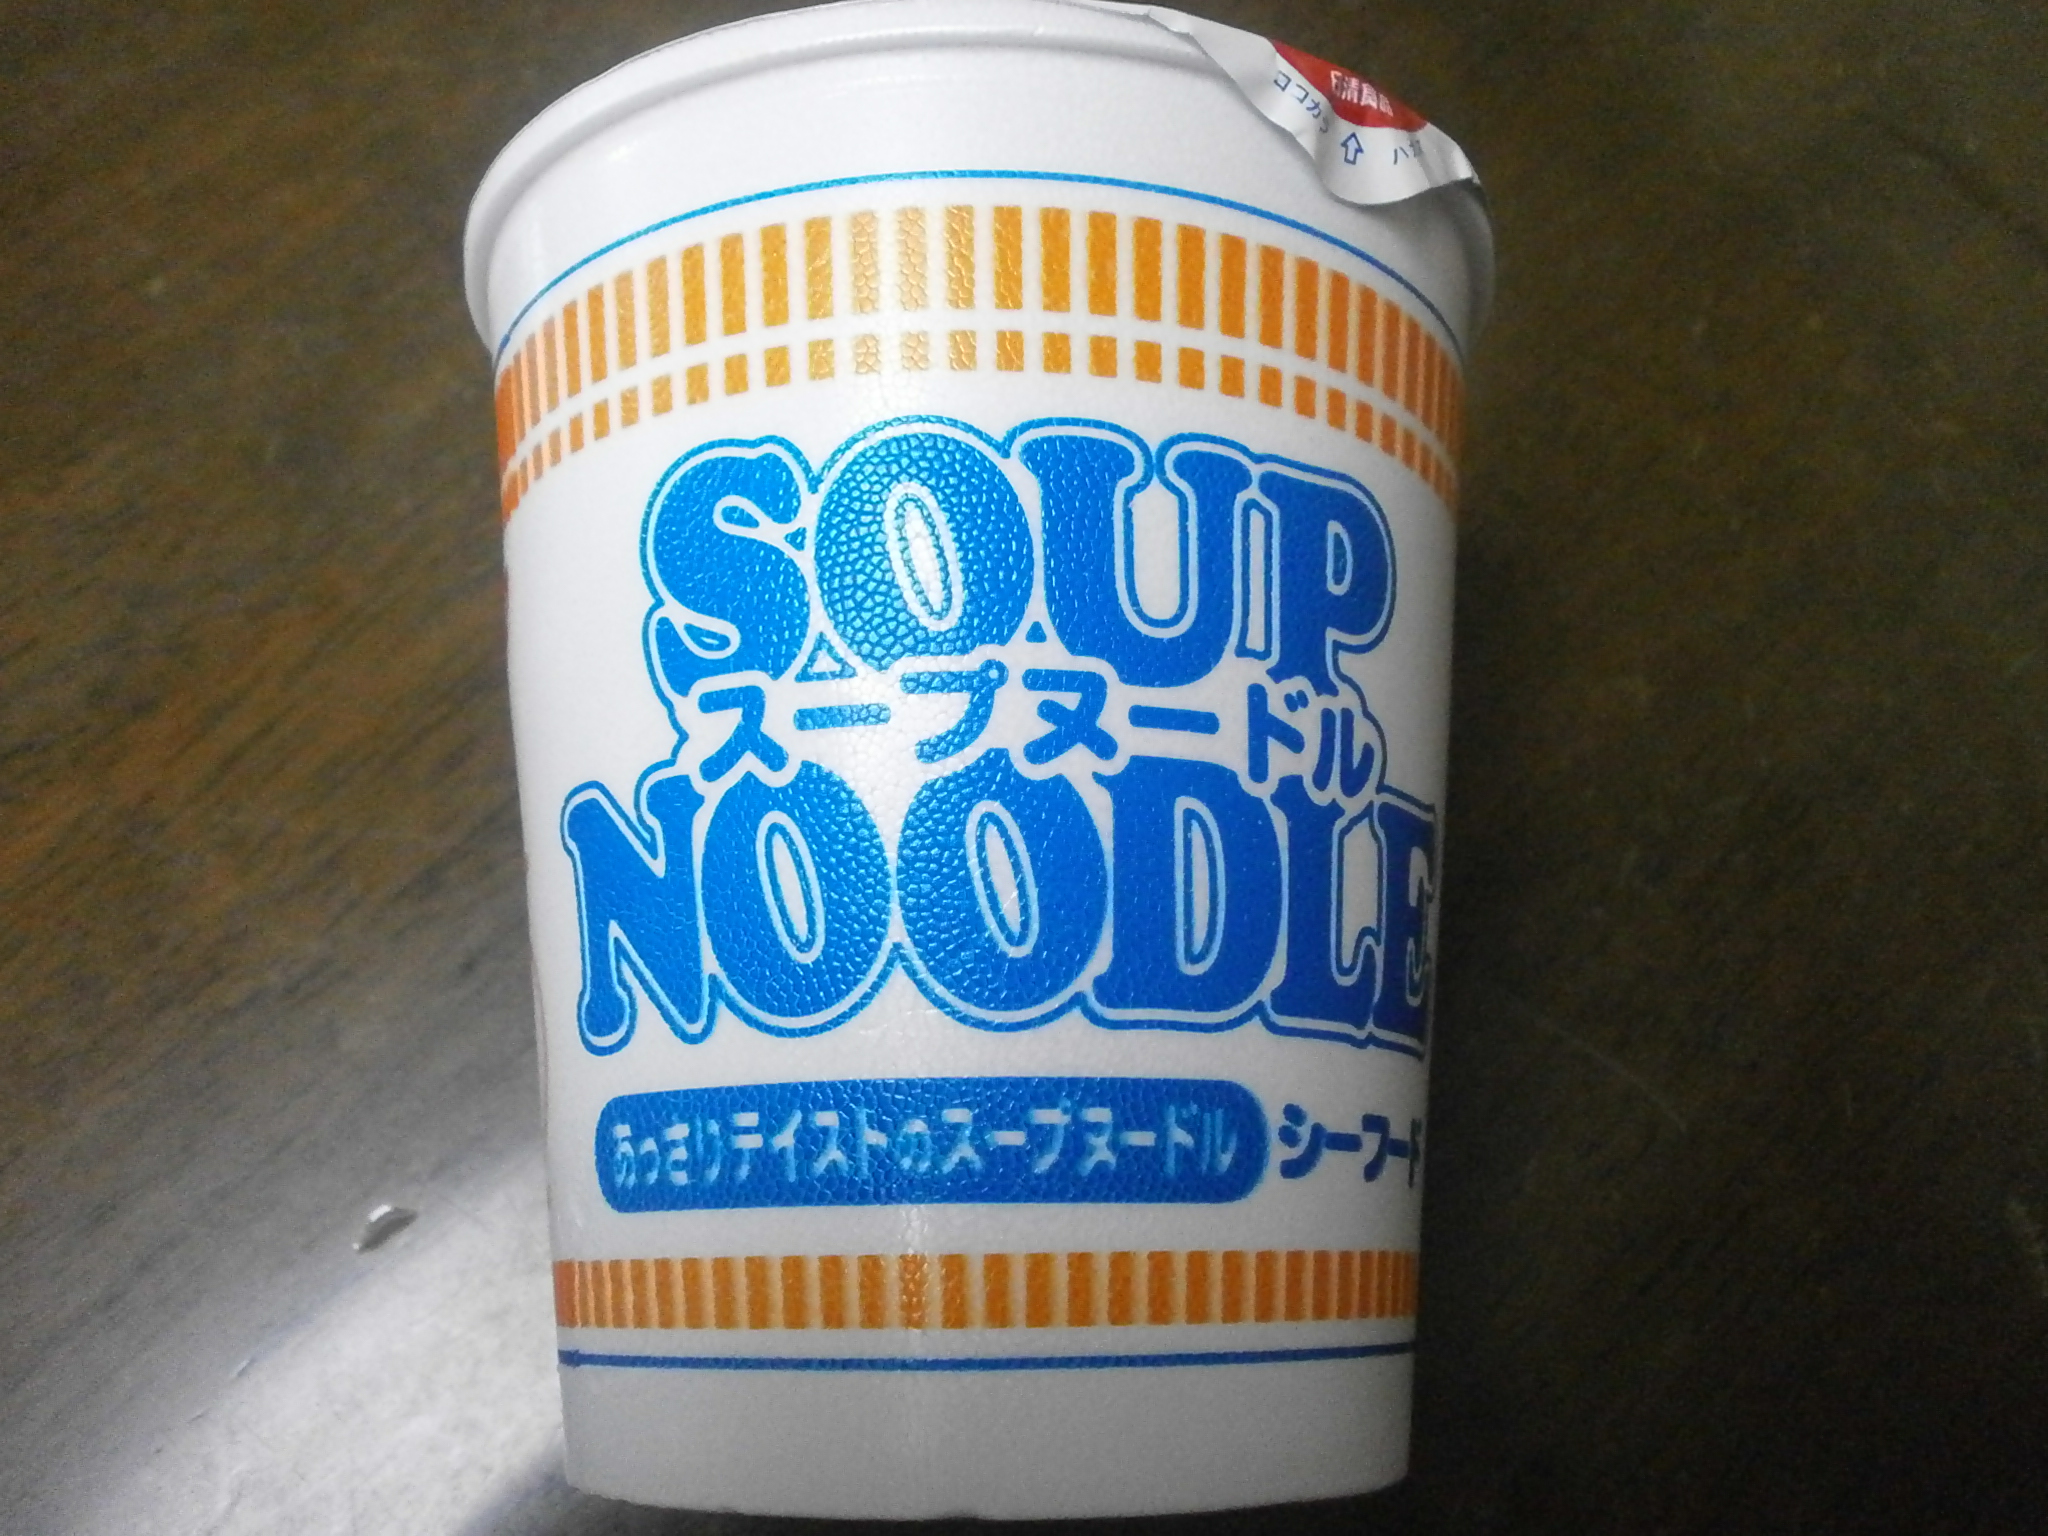 Noodle Soup (Frutti di mare)